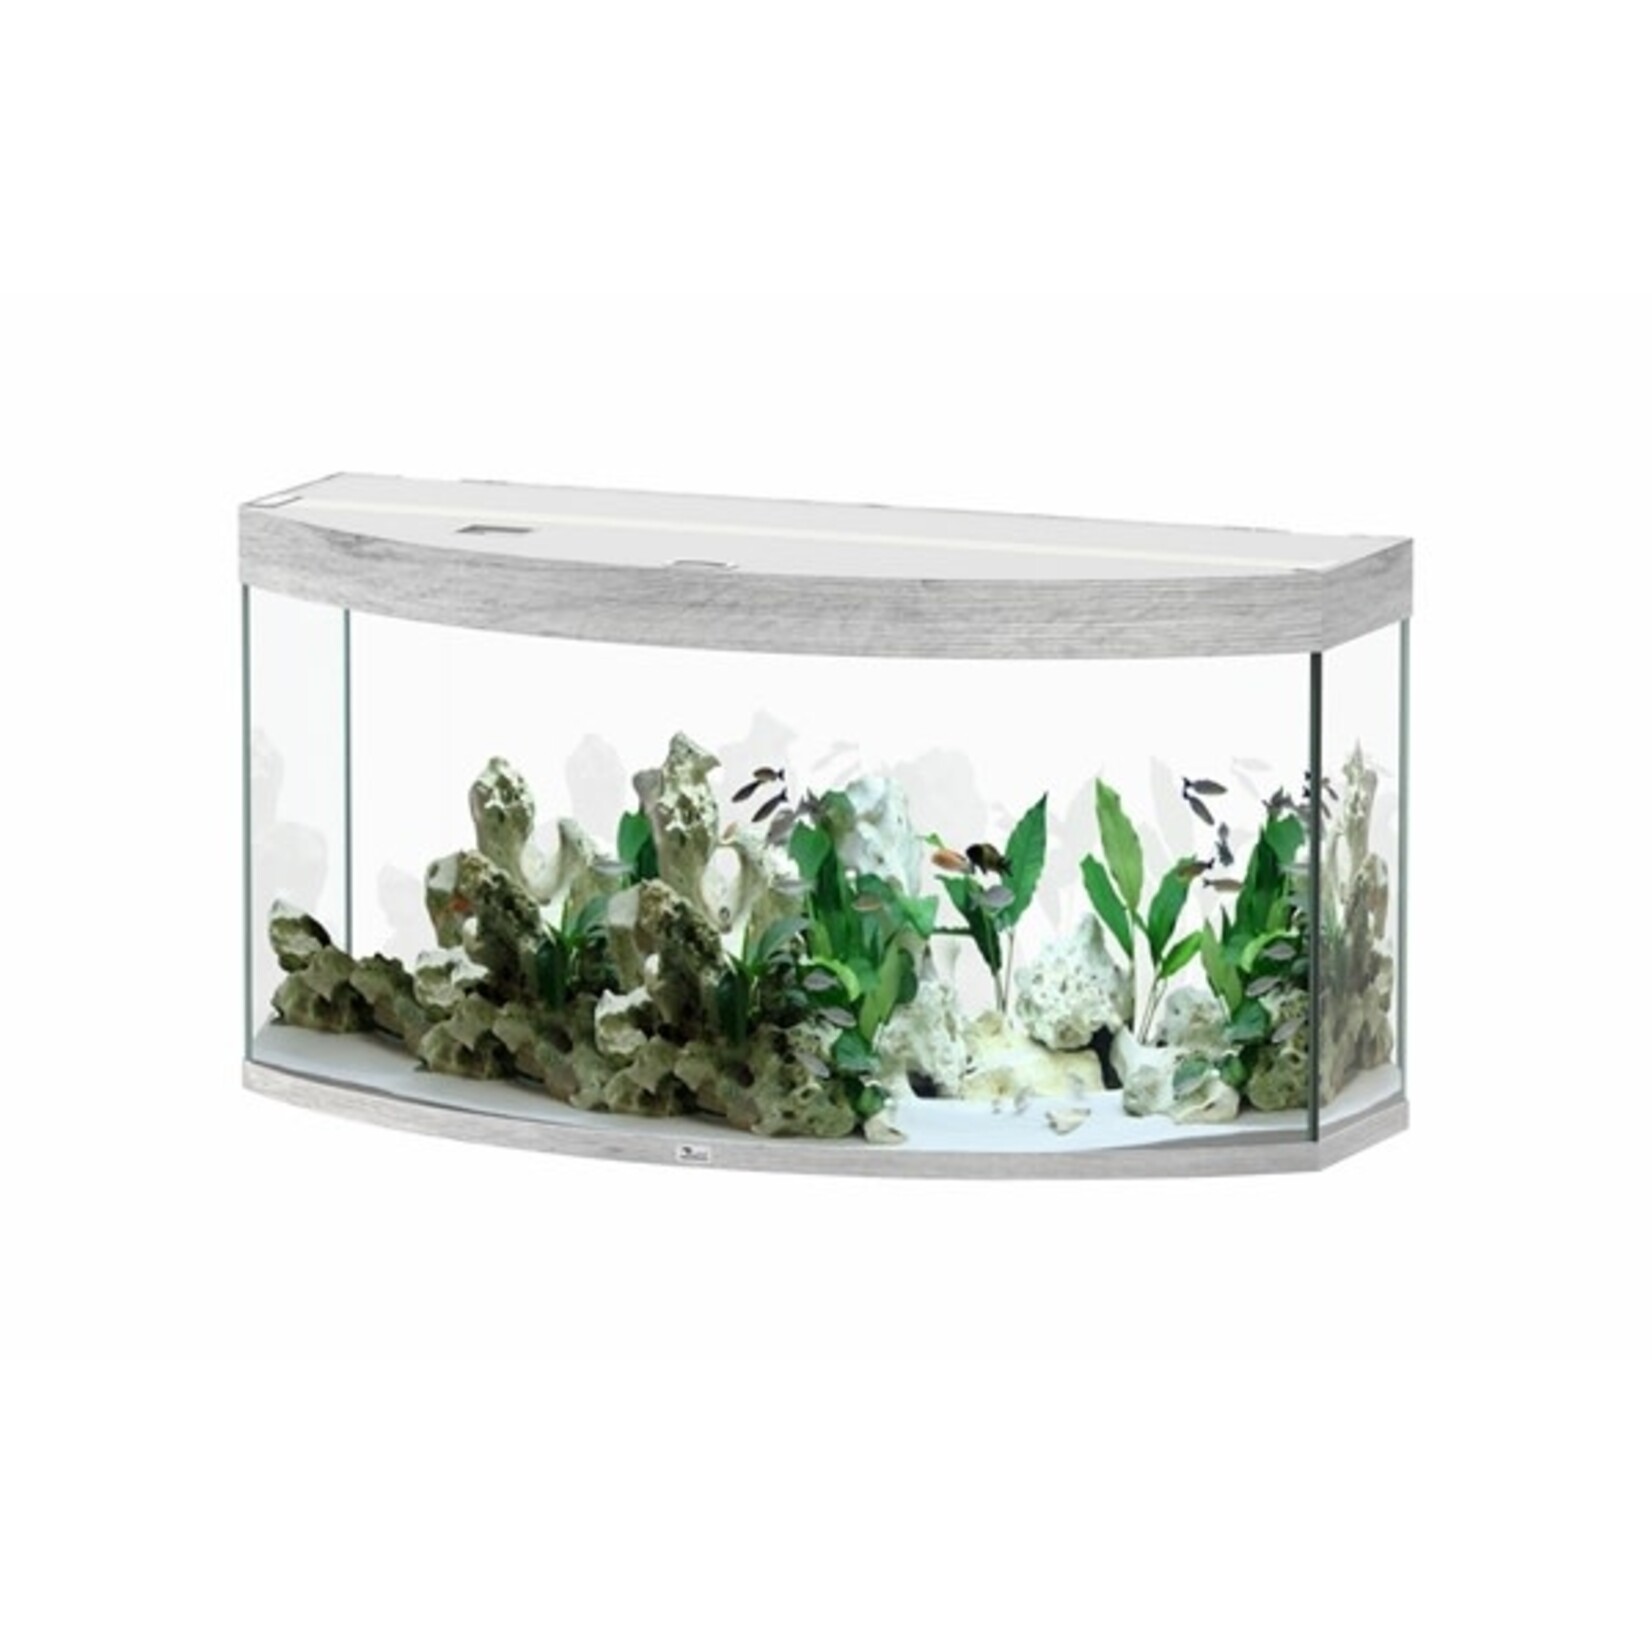 Aquatlantis Aquarium sublime horizon 120 cm whitewash-088